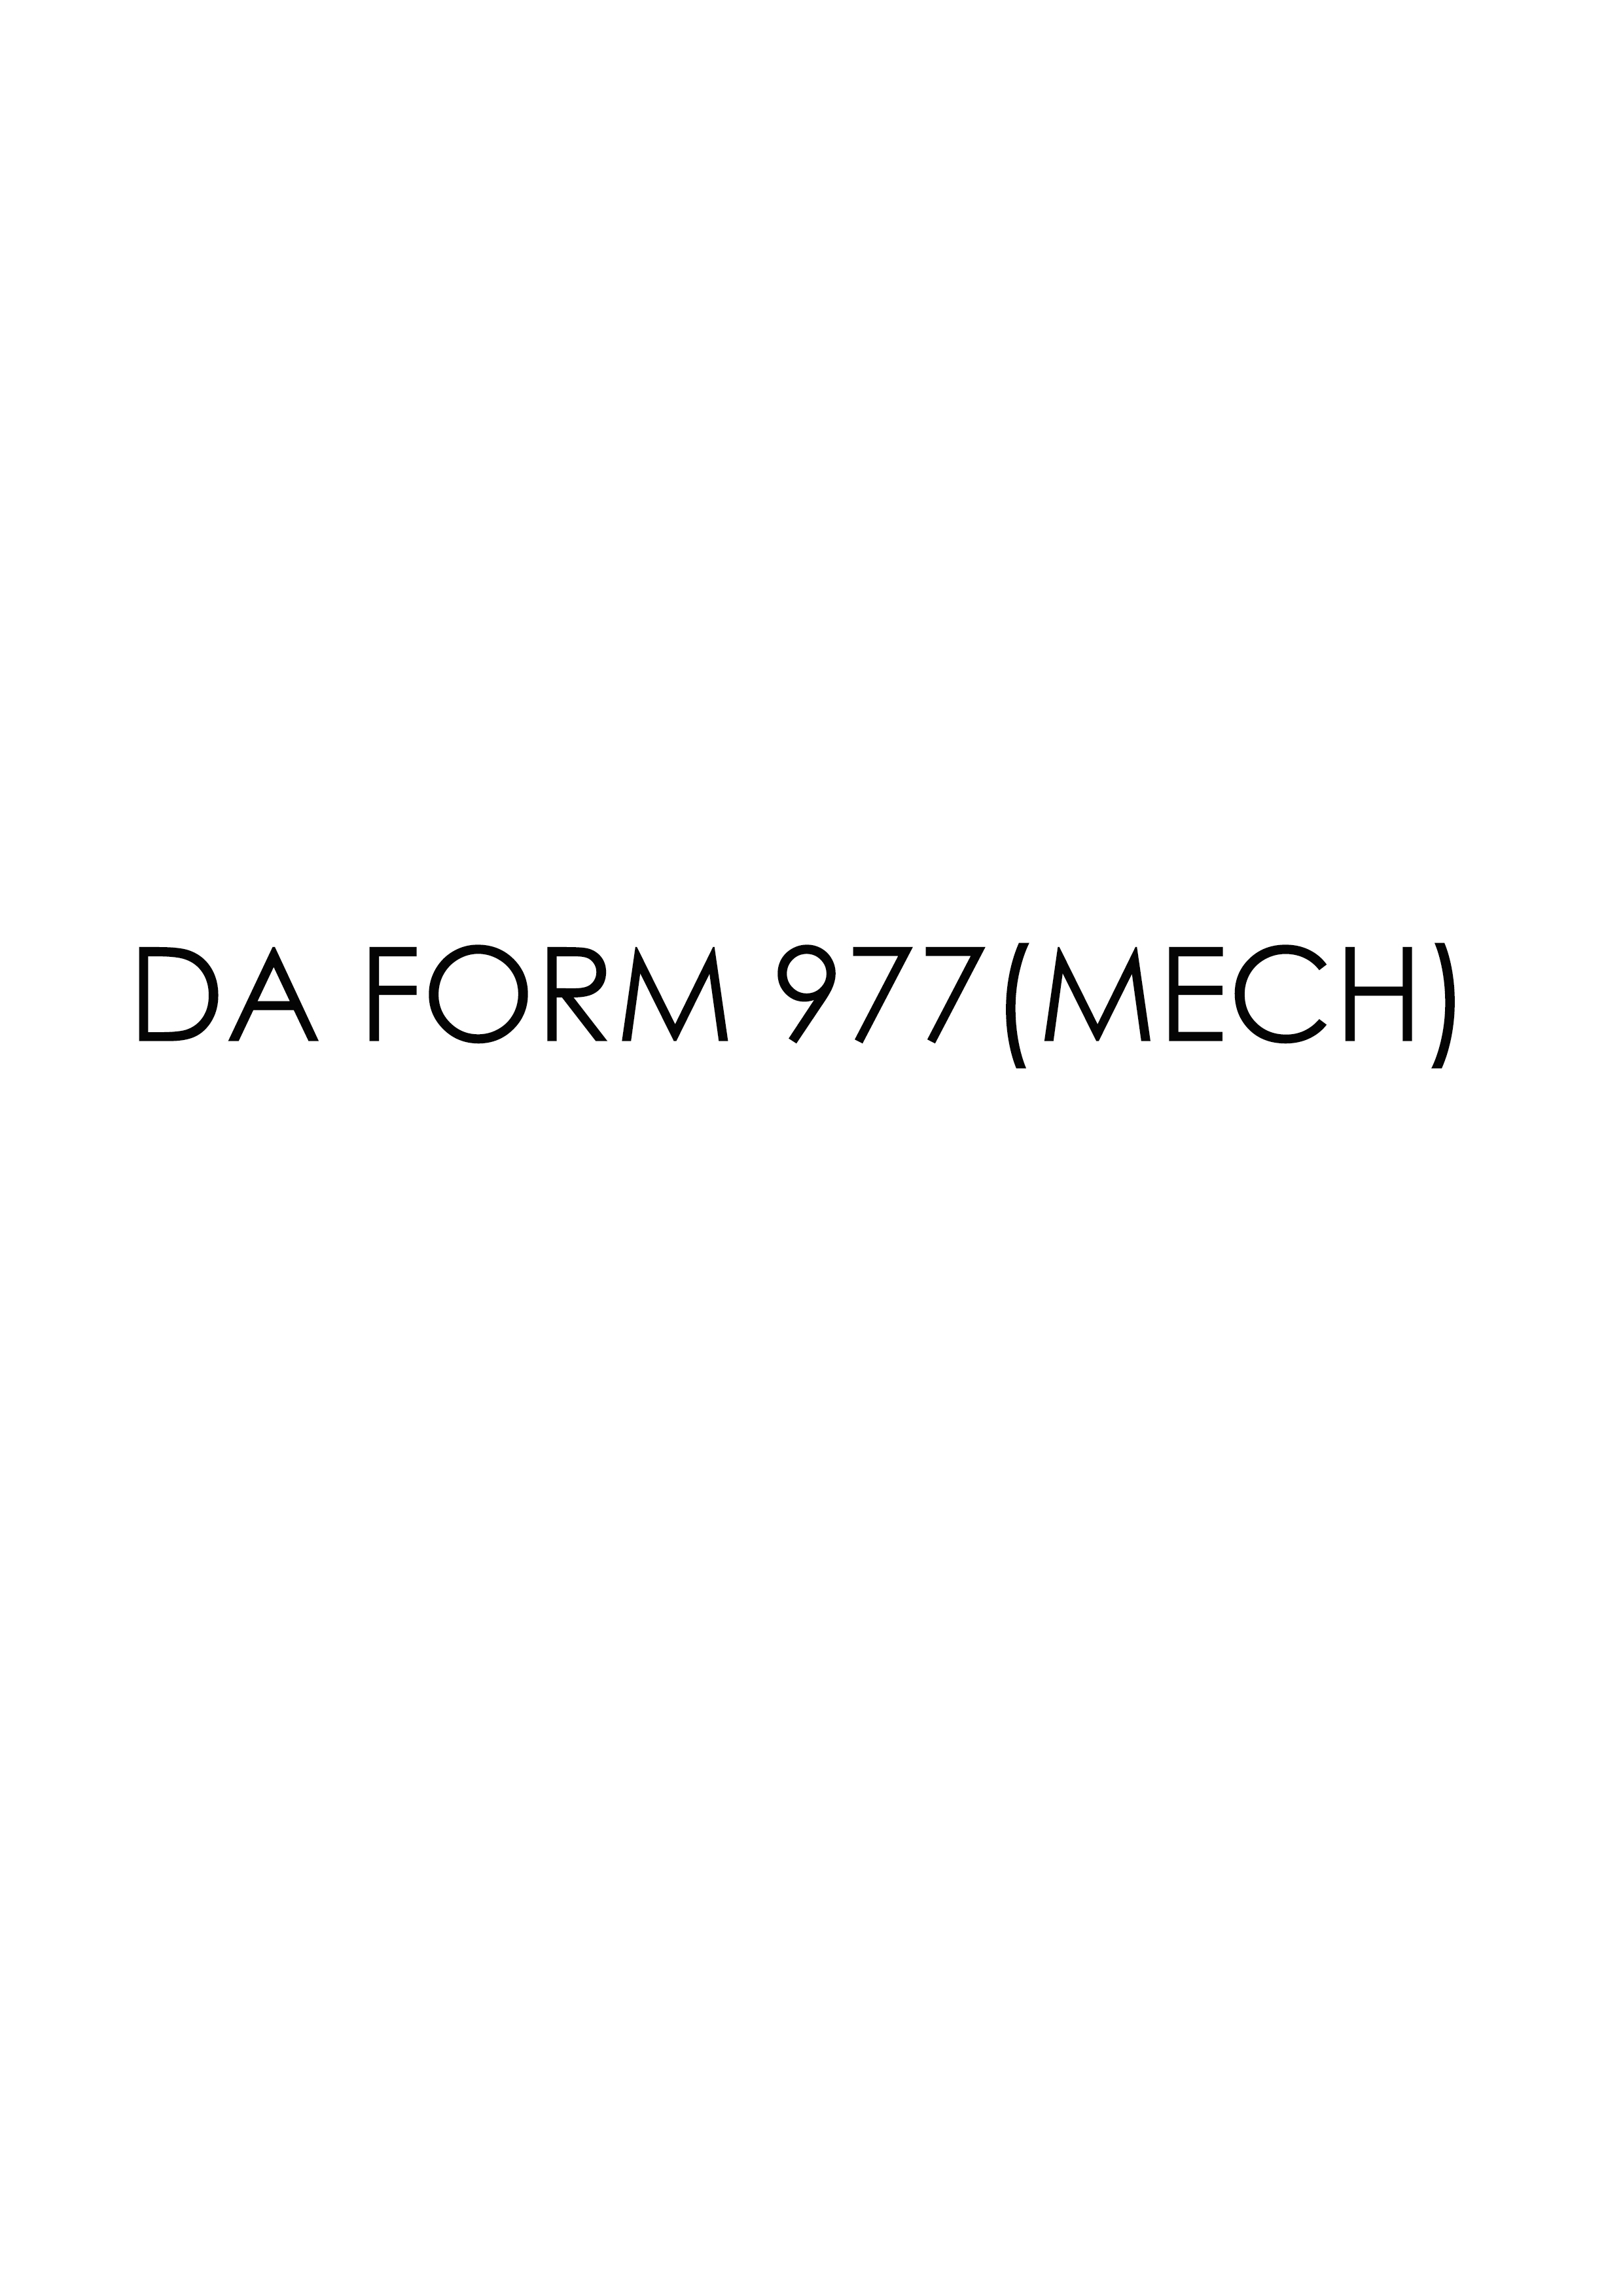 da Form 977(MECH) fillable